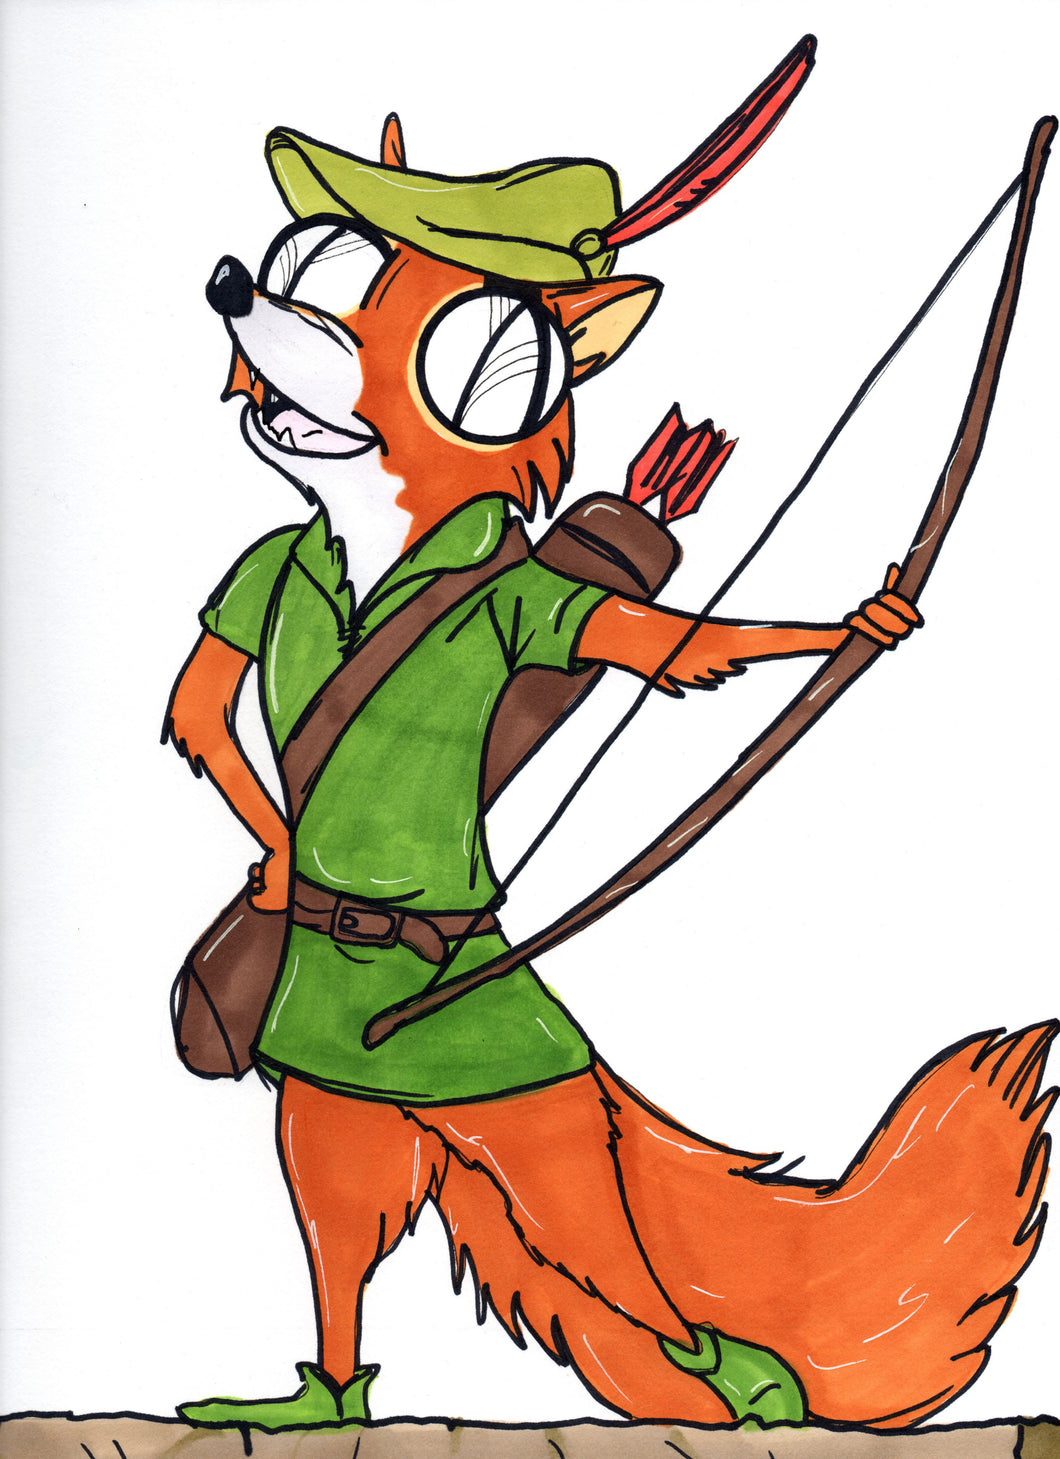 Animated Robin Hood Fox 9x12 Art Print by Hannah Arthur Harth Creations